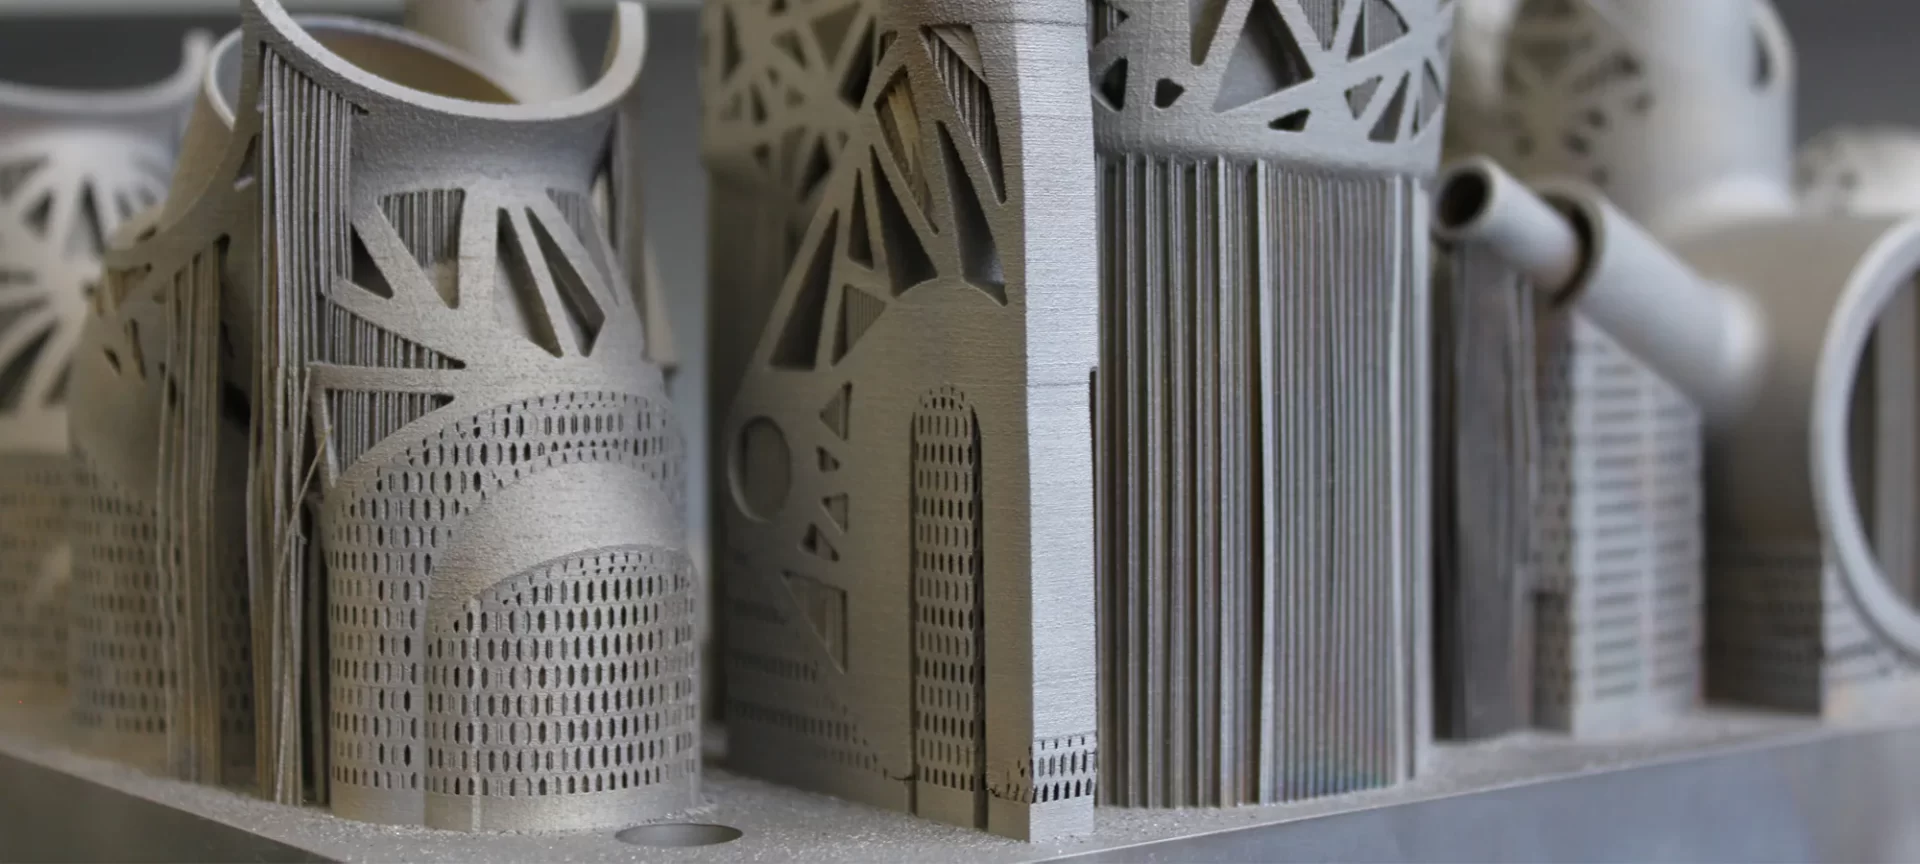 3D printed titanium